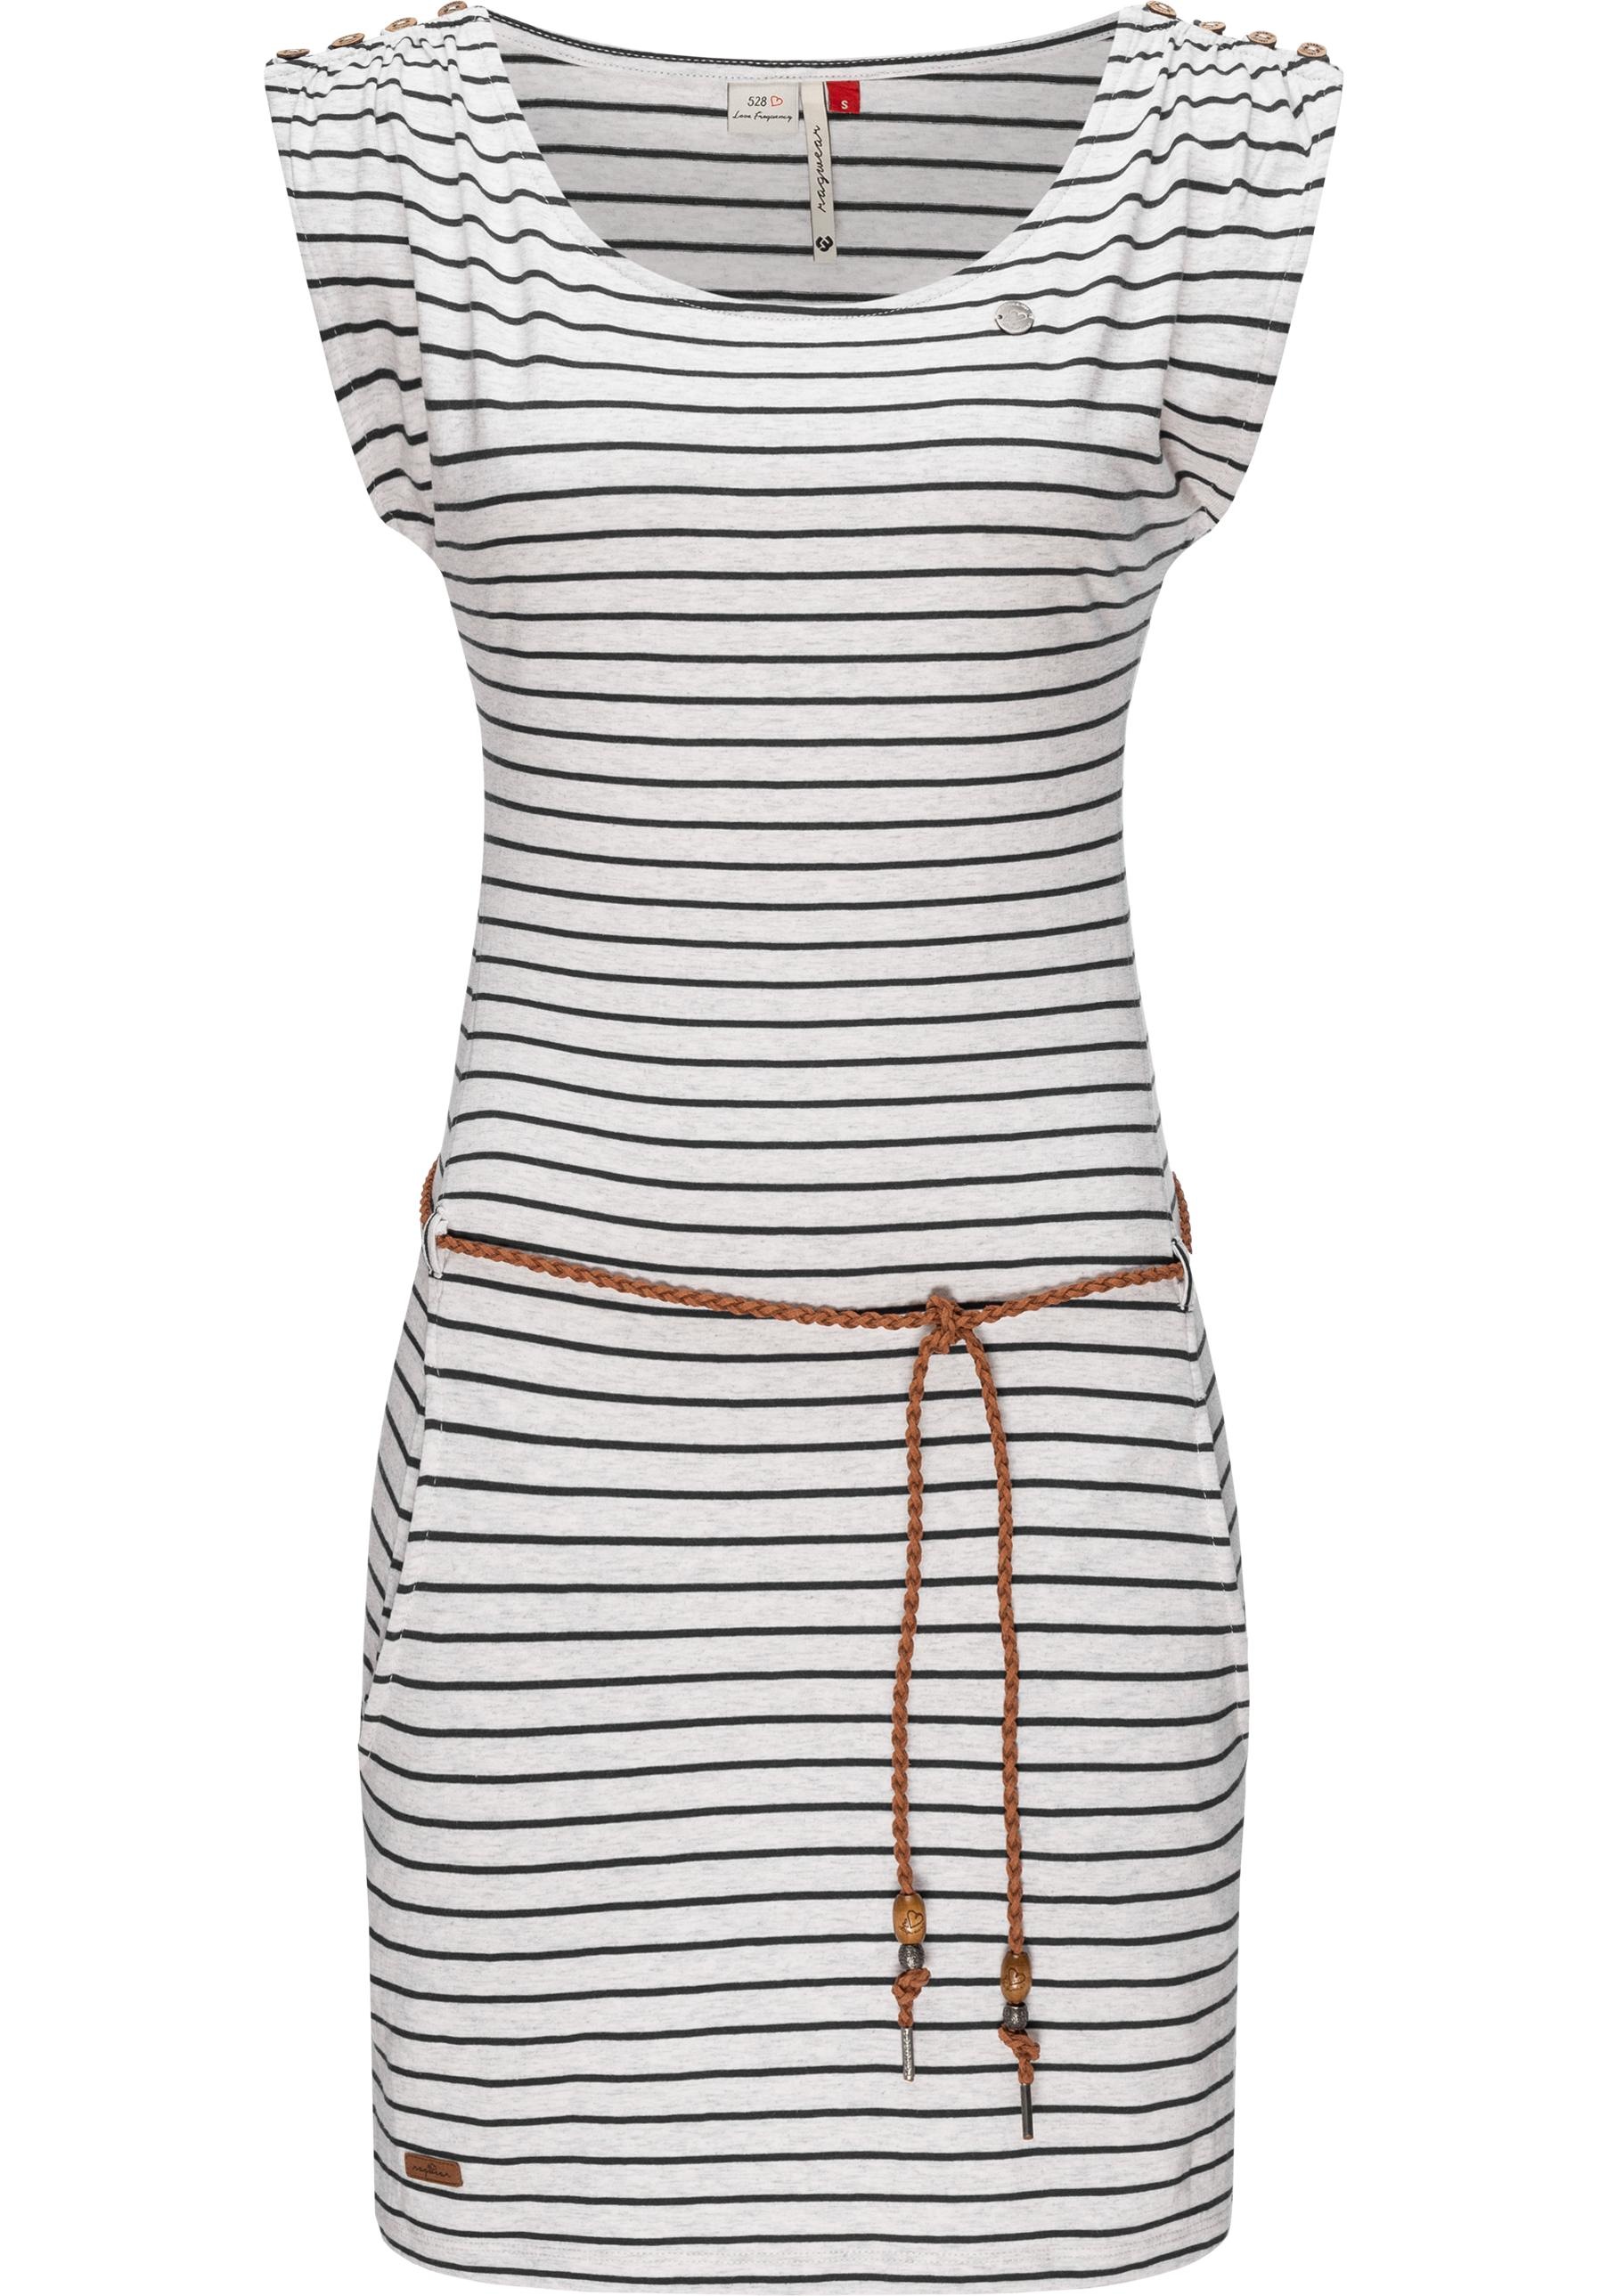 Ragwear Shirtkleid "Chego Stripes Intl.", stylisches Sommerkleid mit Streifen-Muster